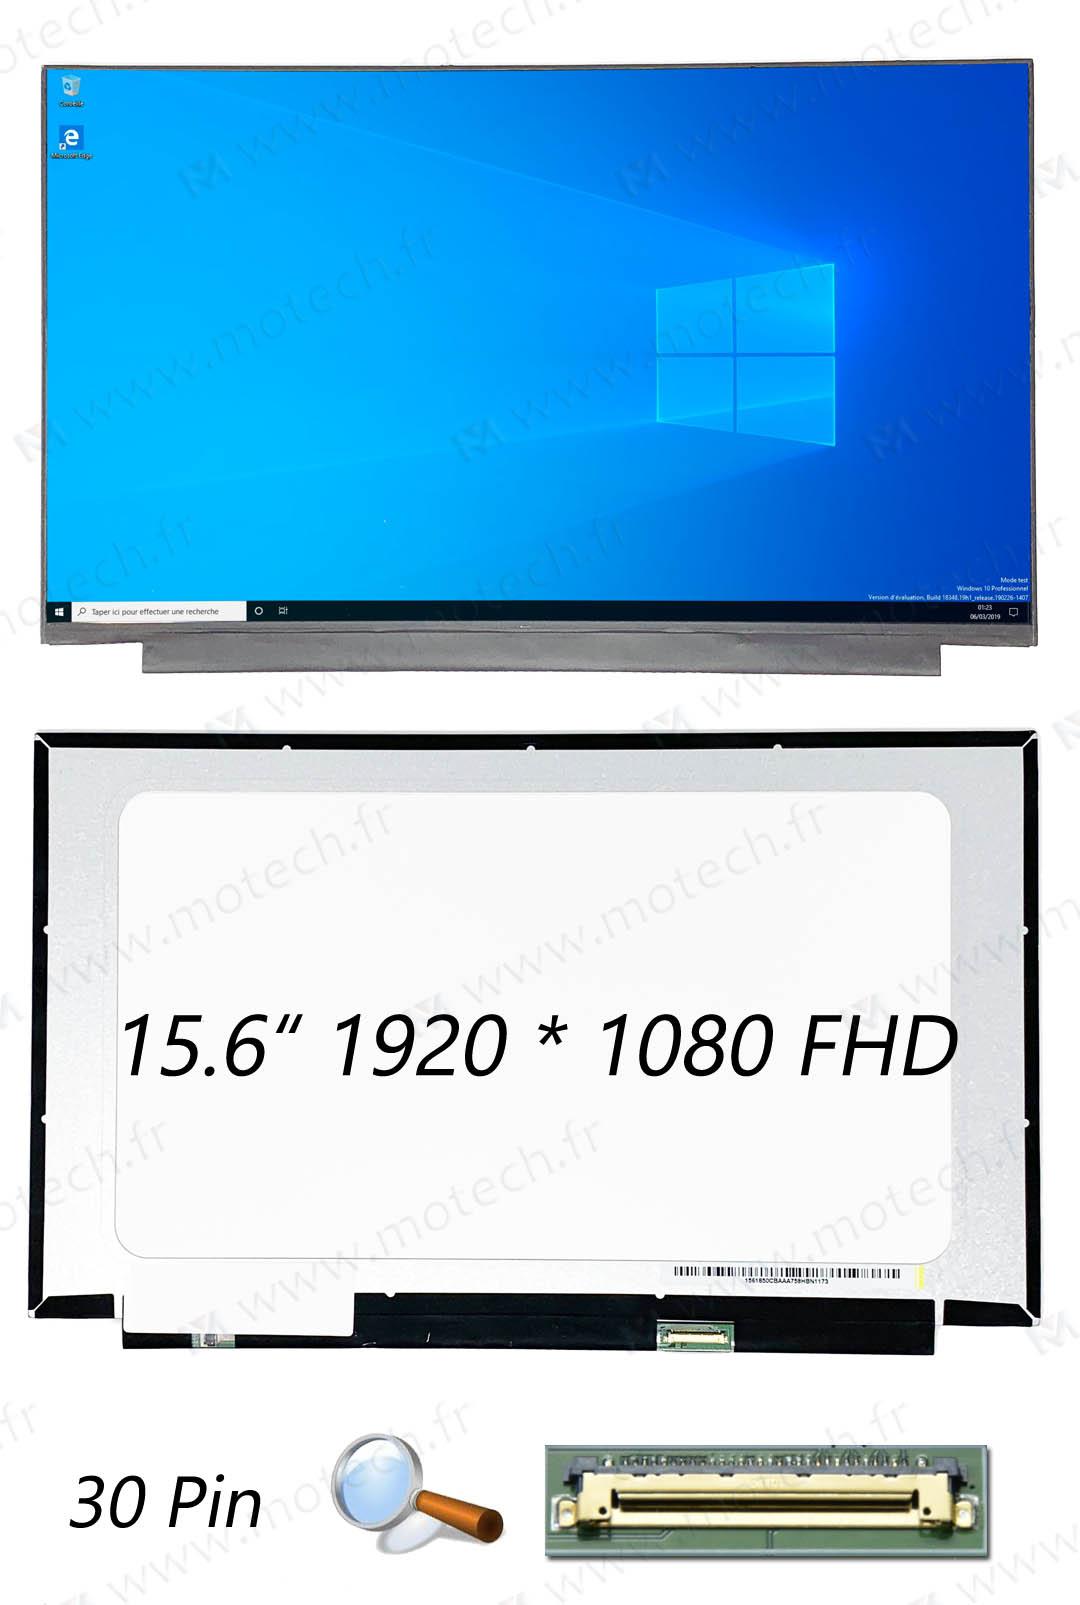 华硕 Asus S530UN 屏幕, 华硕 Asus S530UN 显示屏, 华硕 Asus S530UN 液晶屏, 华硕 Asus S530UN 显示器, 华硕 Asus S530UN 液晶屏幕, 华硕 Asus S530UN LCD,